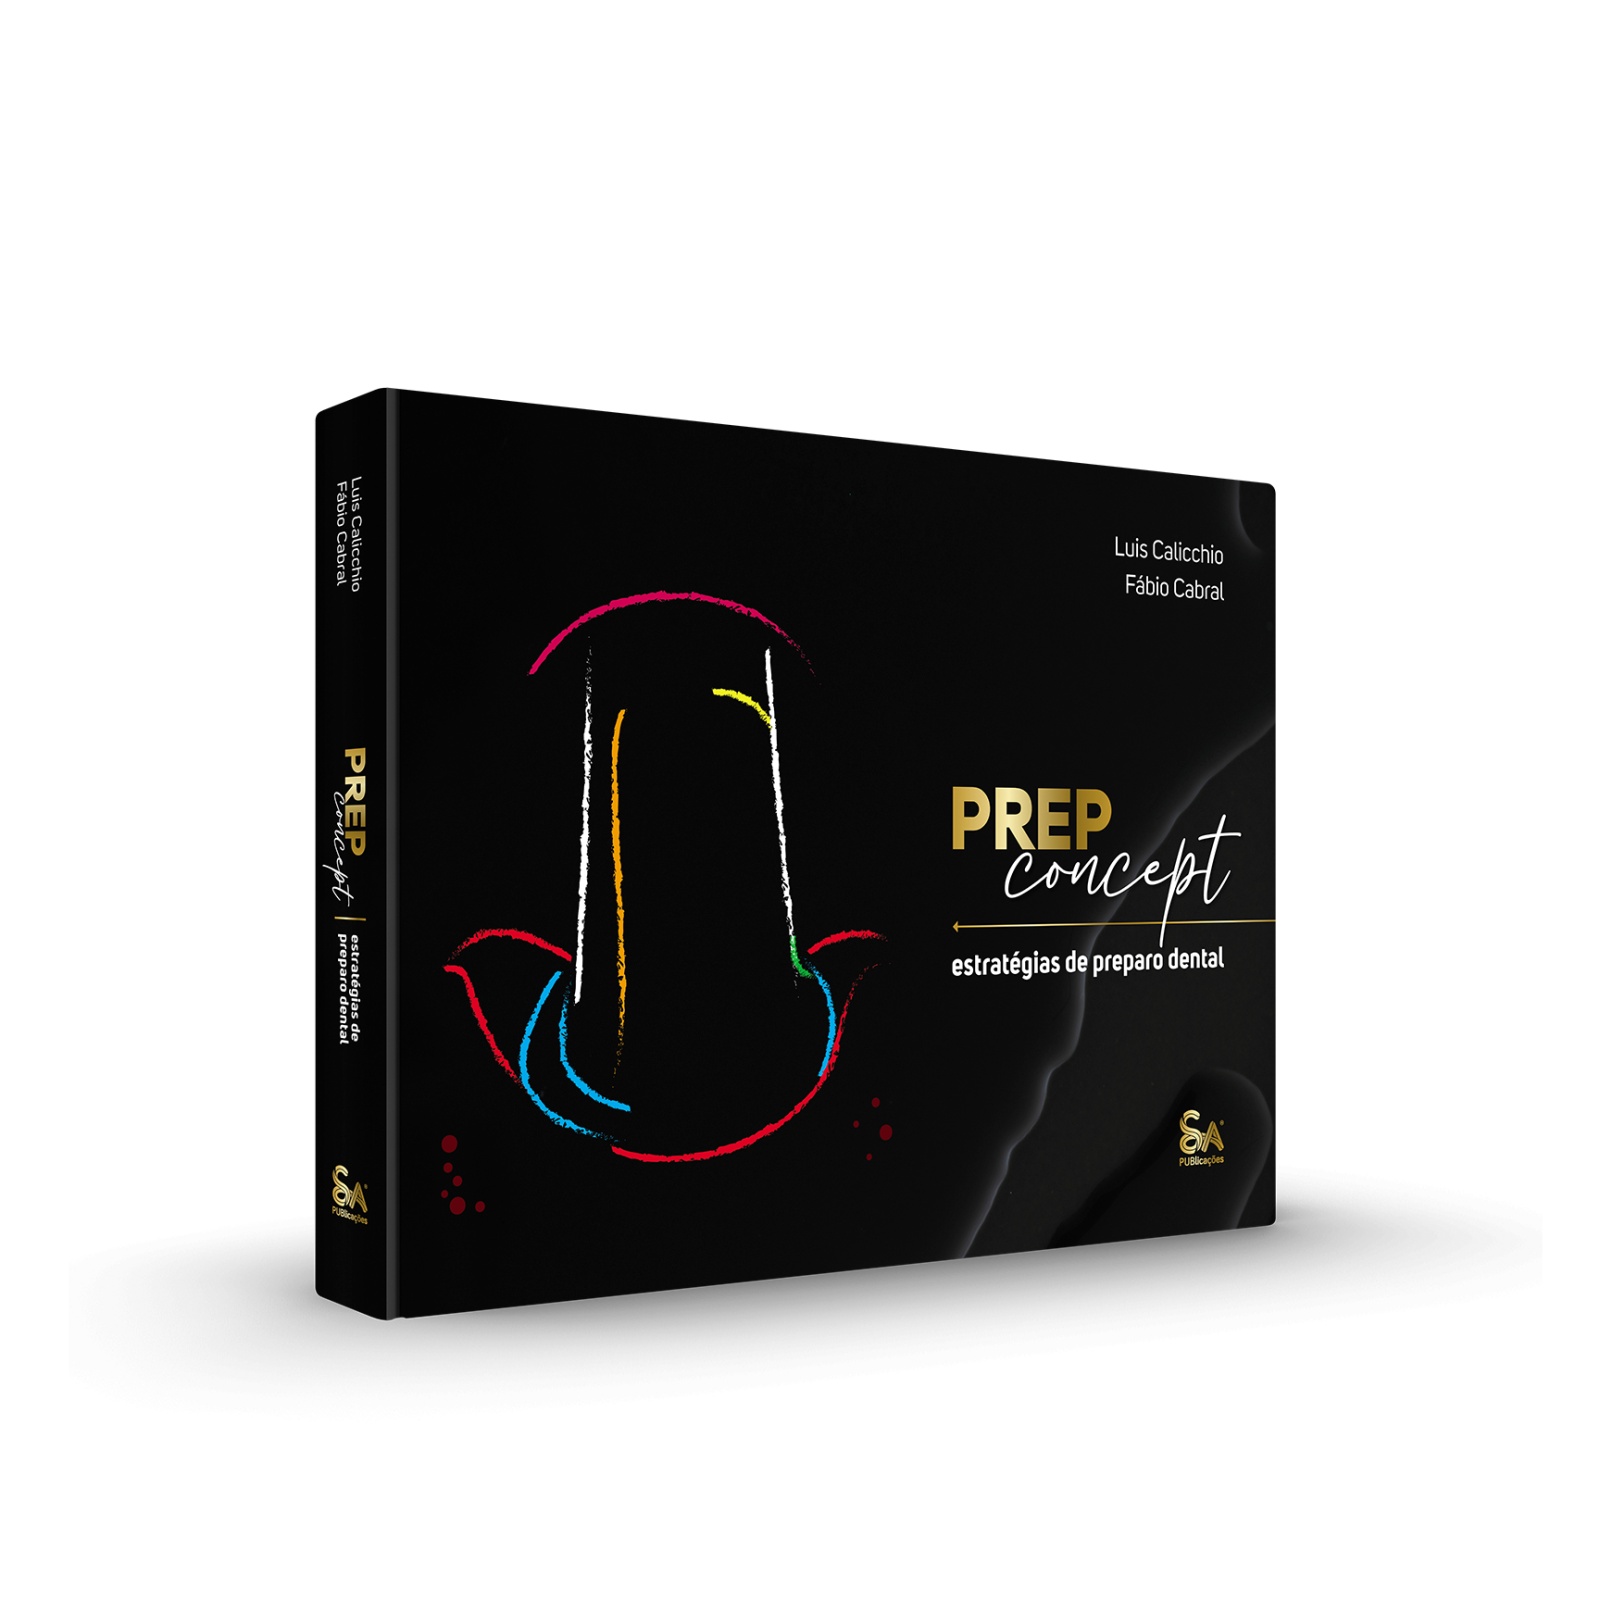 PREP Concept - Estratégias de Preparo Dental